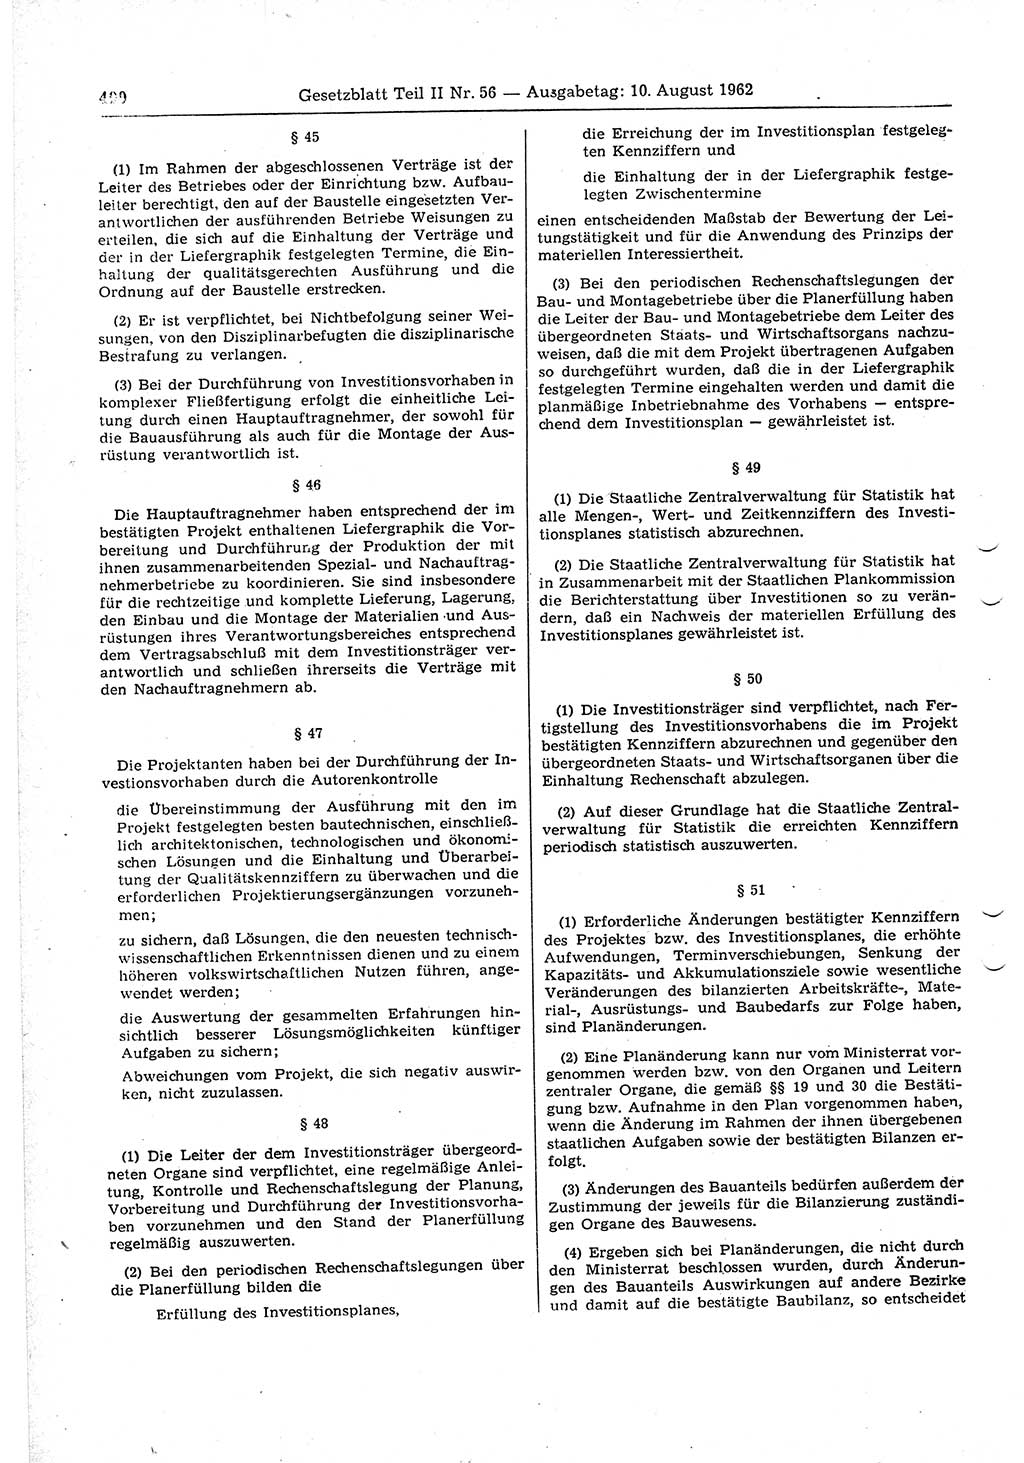 Gesetzblatt (GBl.) der Deutschen Demokratischen Republik (DDR) Teil ⅠⅠ 1962, Seite 490 (GBl. DDR ⅠⅠ 1962, S. 490)